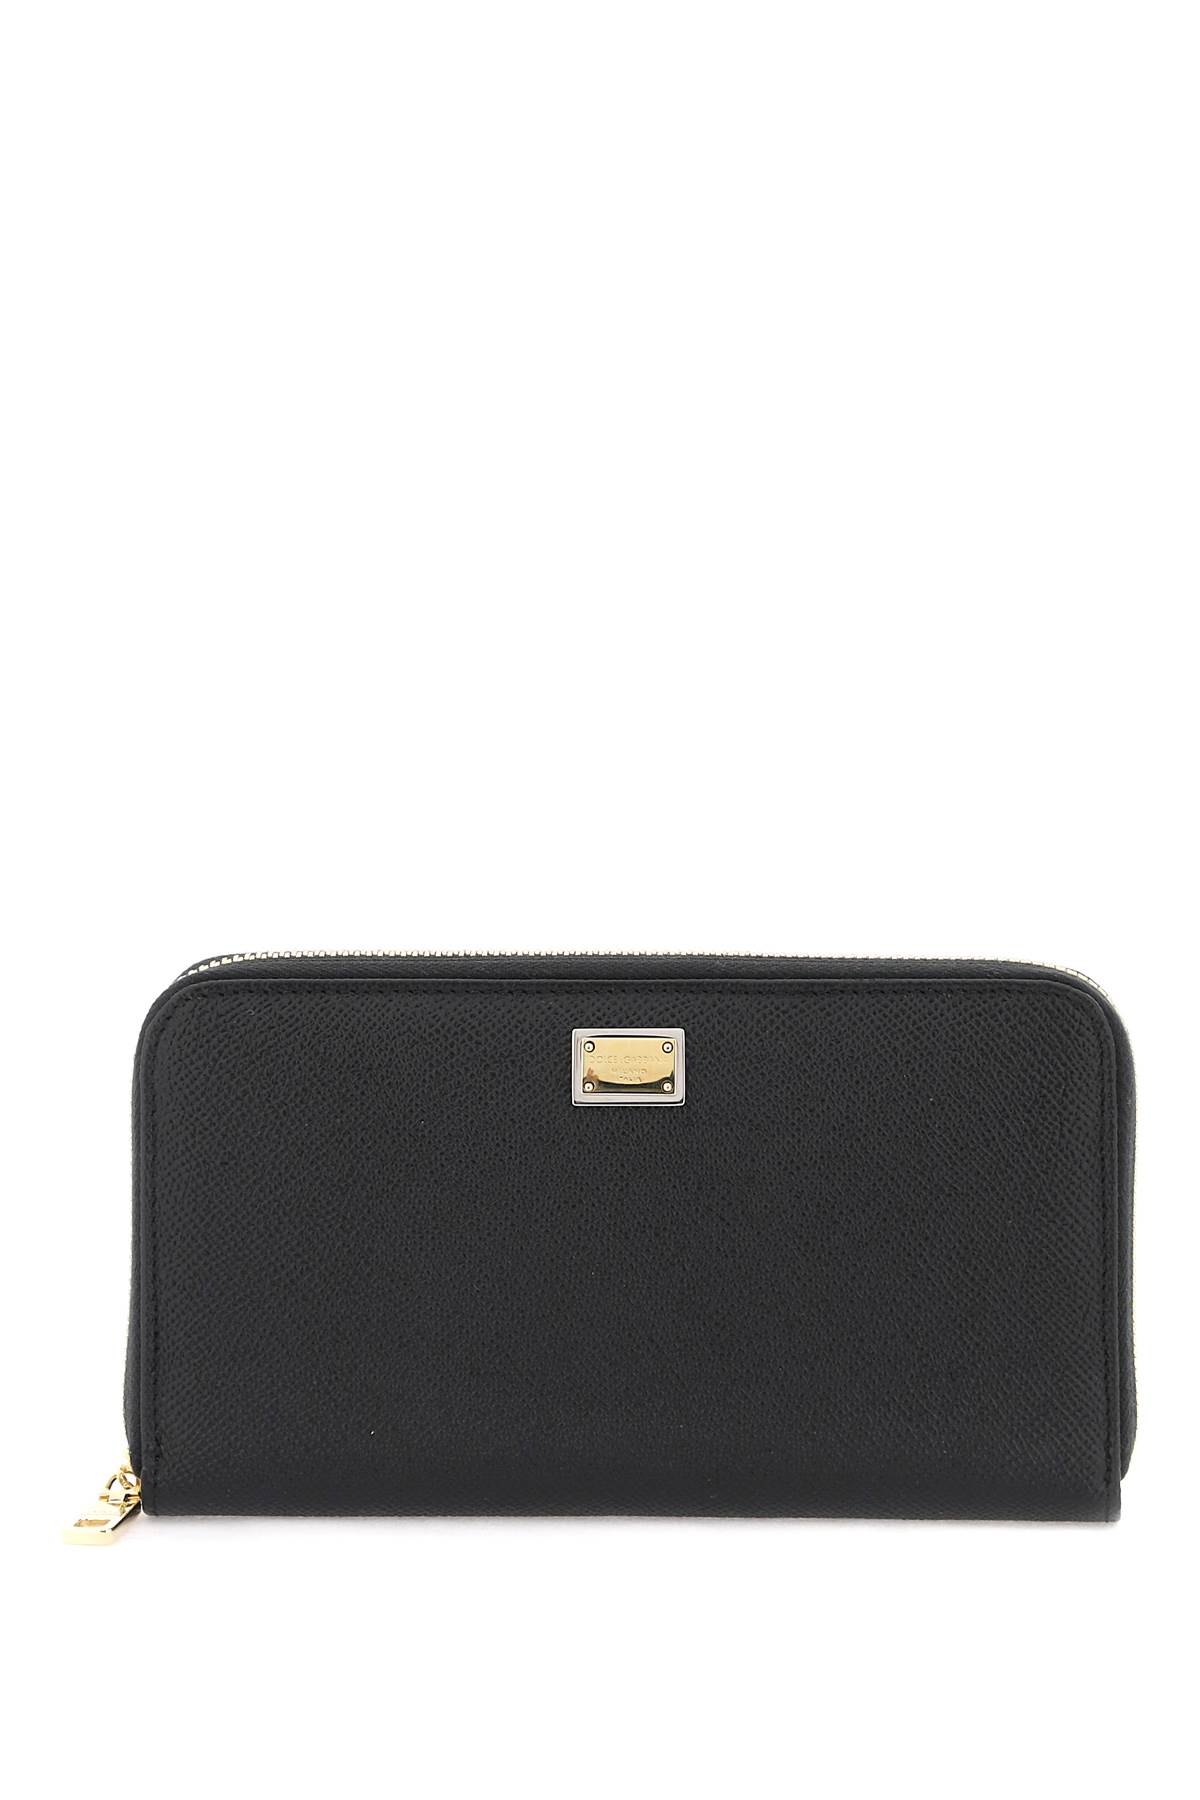 Dolce & Gabbana Zip-around Wallet